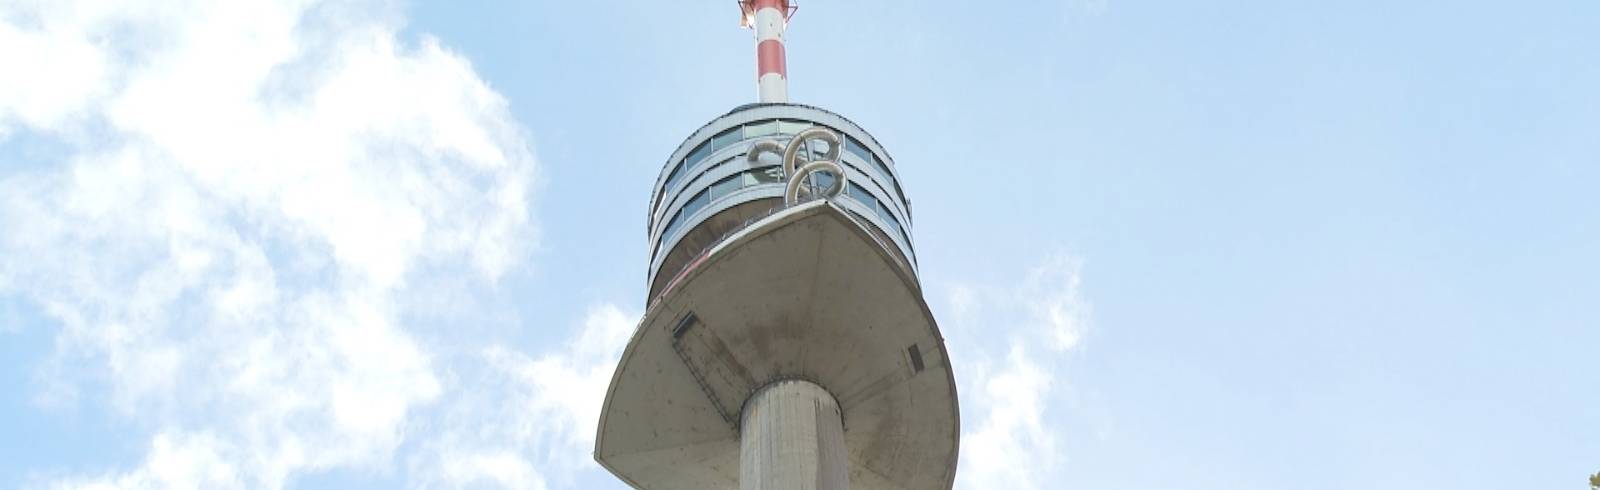 Jubiläum: 60 Jahre Donauturm